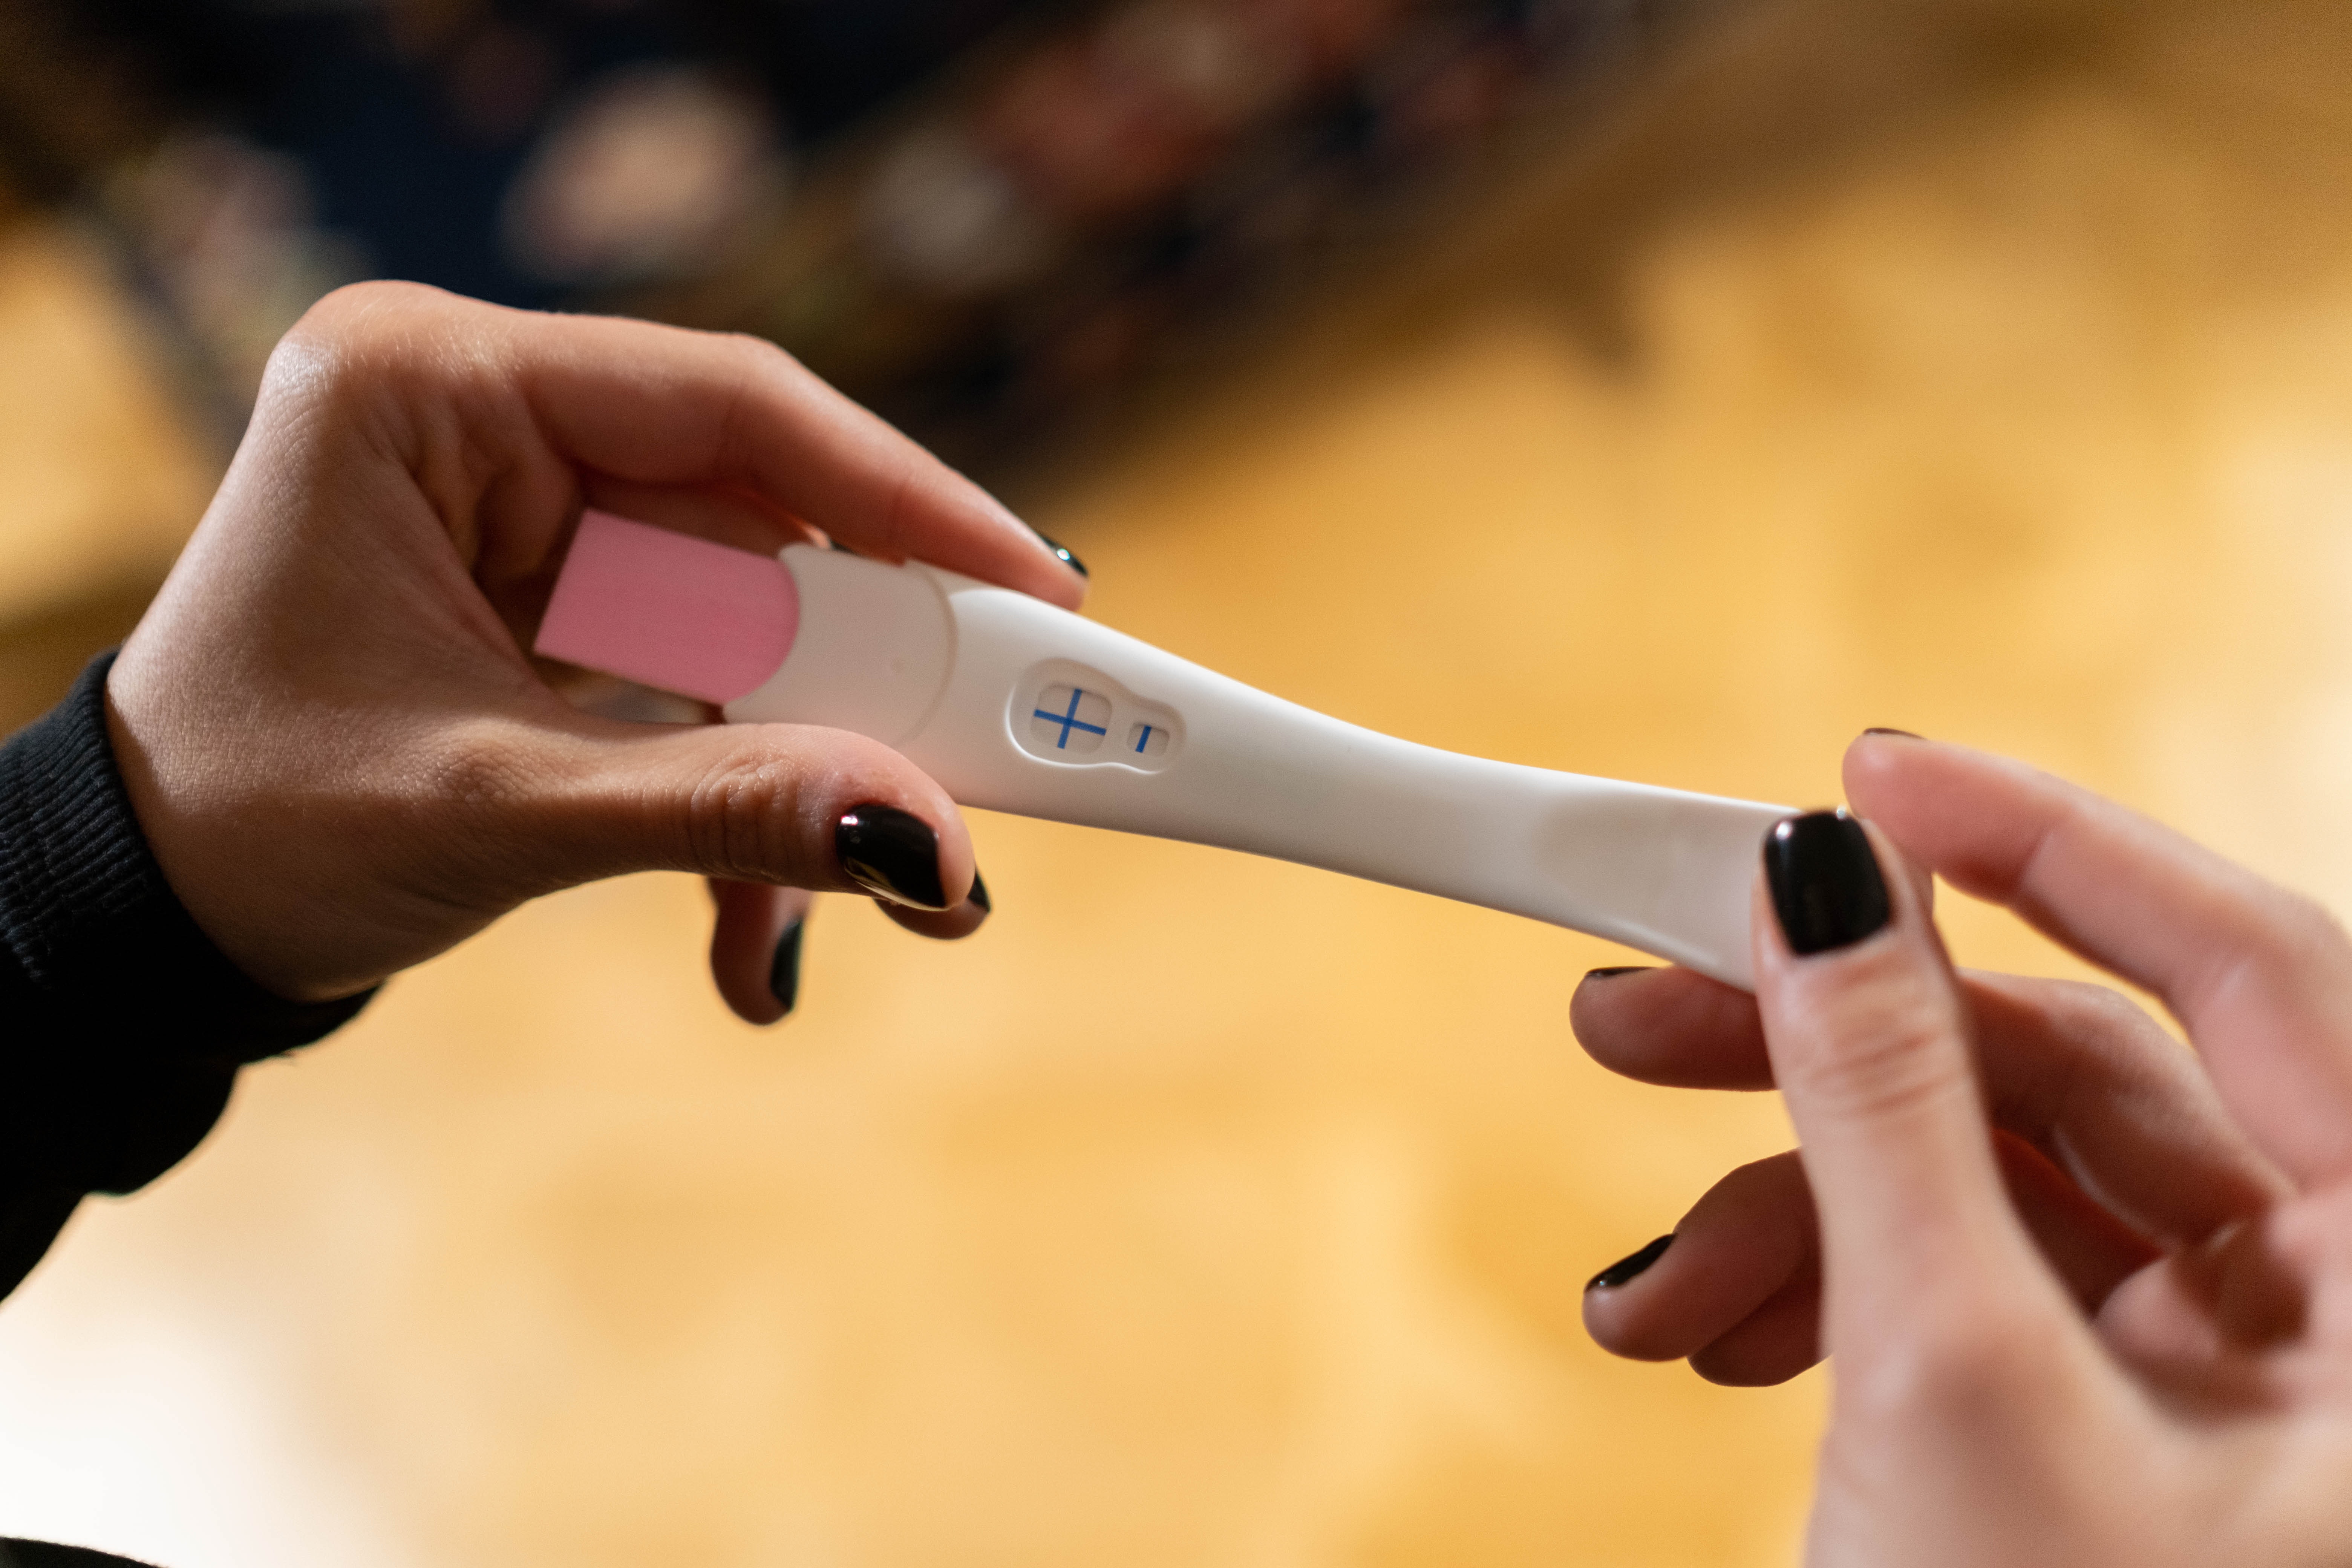 pozitivan test na trudnoću s plusićem u rukama djevojke koja ima nalakirane crne notke